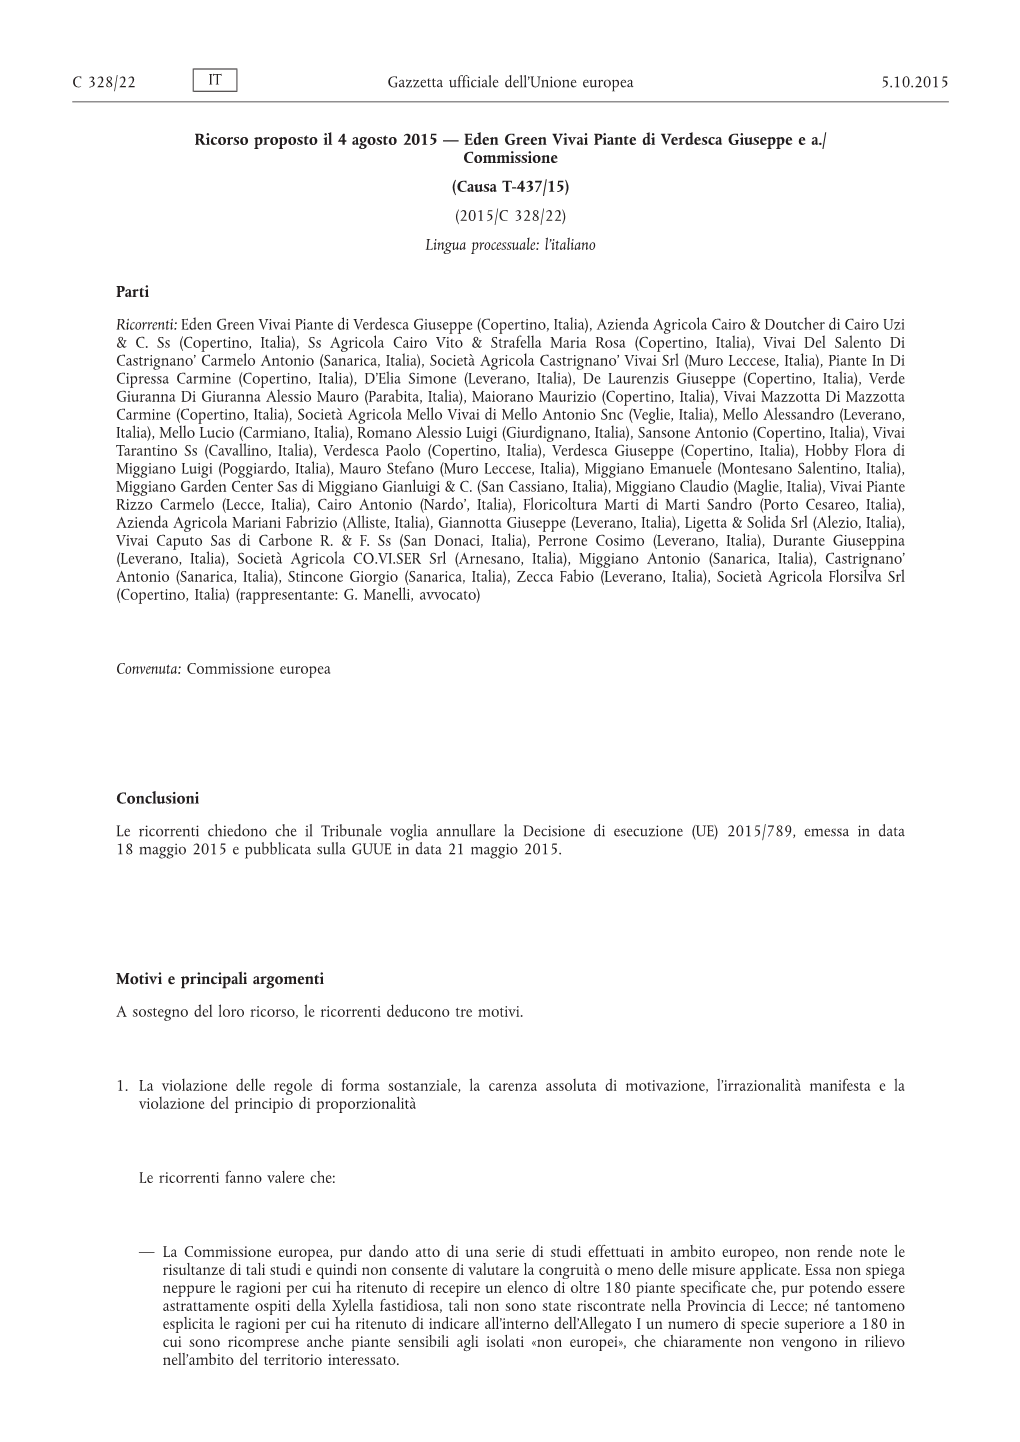 Causa T-437/15: Ricorso Proposto Il 4 Agosto 2015 — Eden Green Vivai Piante Di Verdesca Giuseppe E A./Commissione